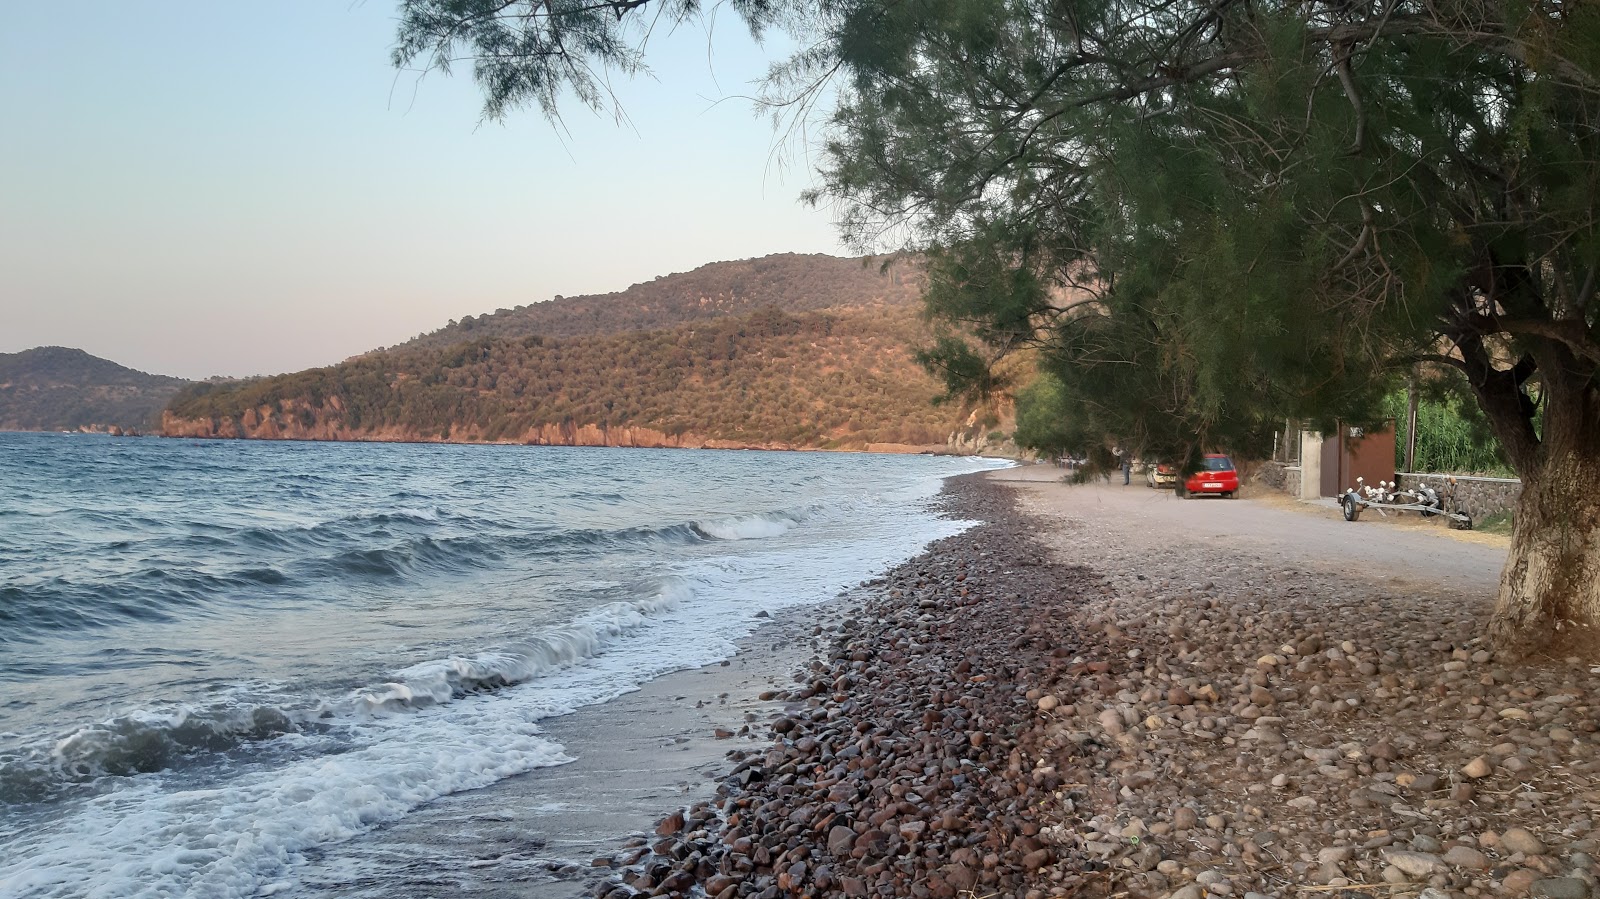 Paralia Kagia'in fotoğrafı geniş plaj ile birlikte